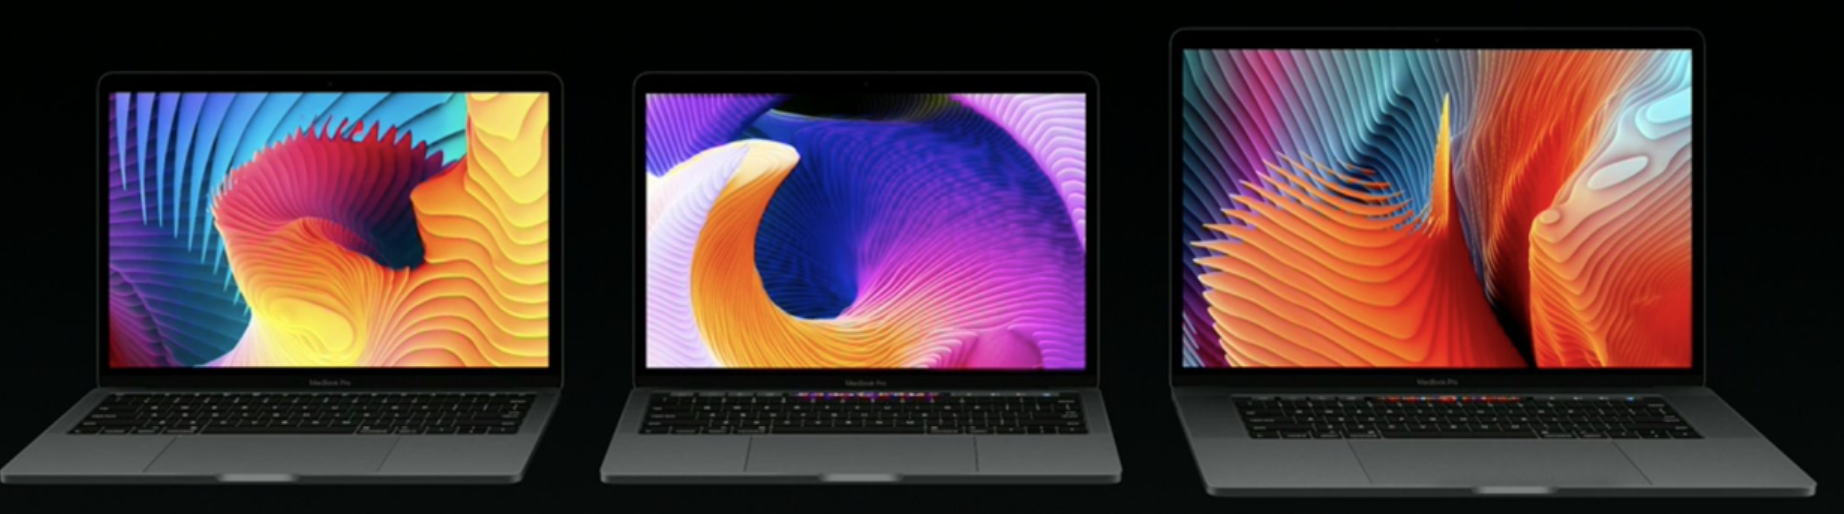 macbook pro wallpaper,il computer portatile,schermo,dispositivo di uscita,tecnologia,dispositivo di visualizzazione